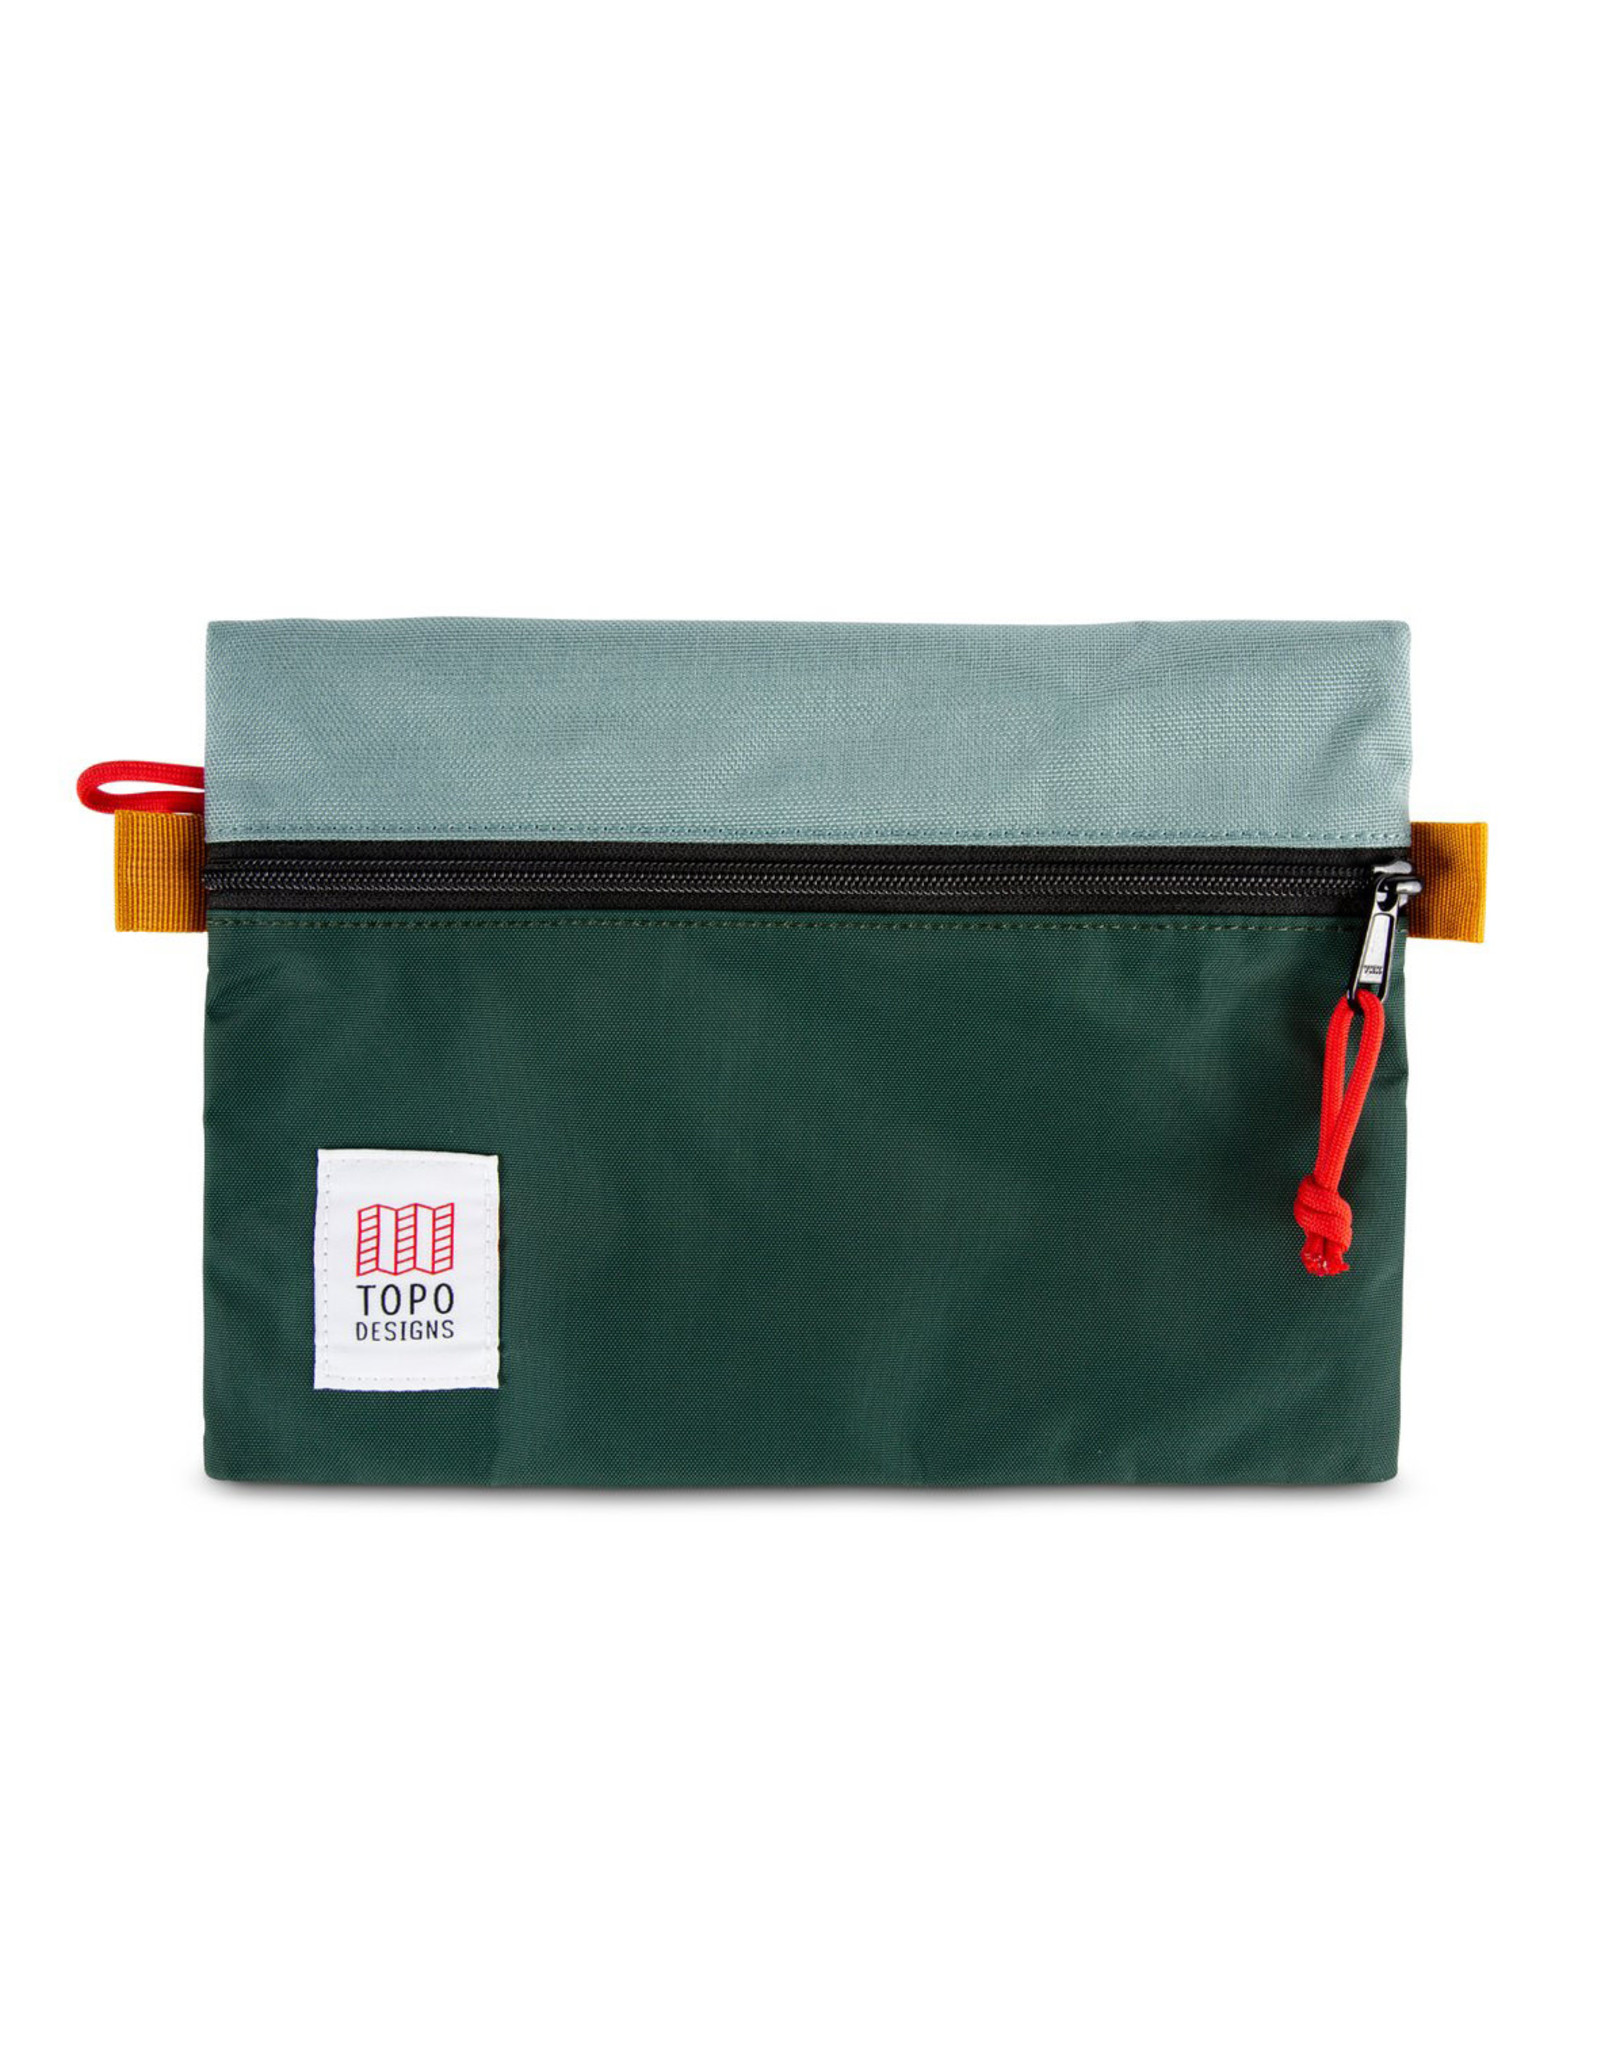 Topo Accessory Bag Medium - Sage